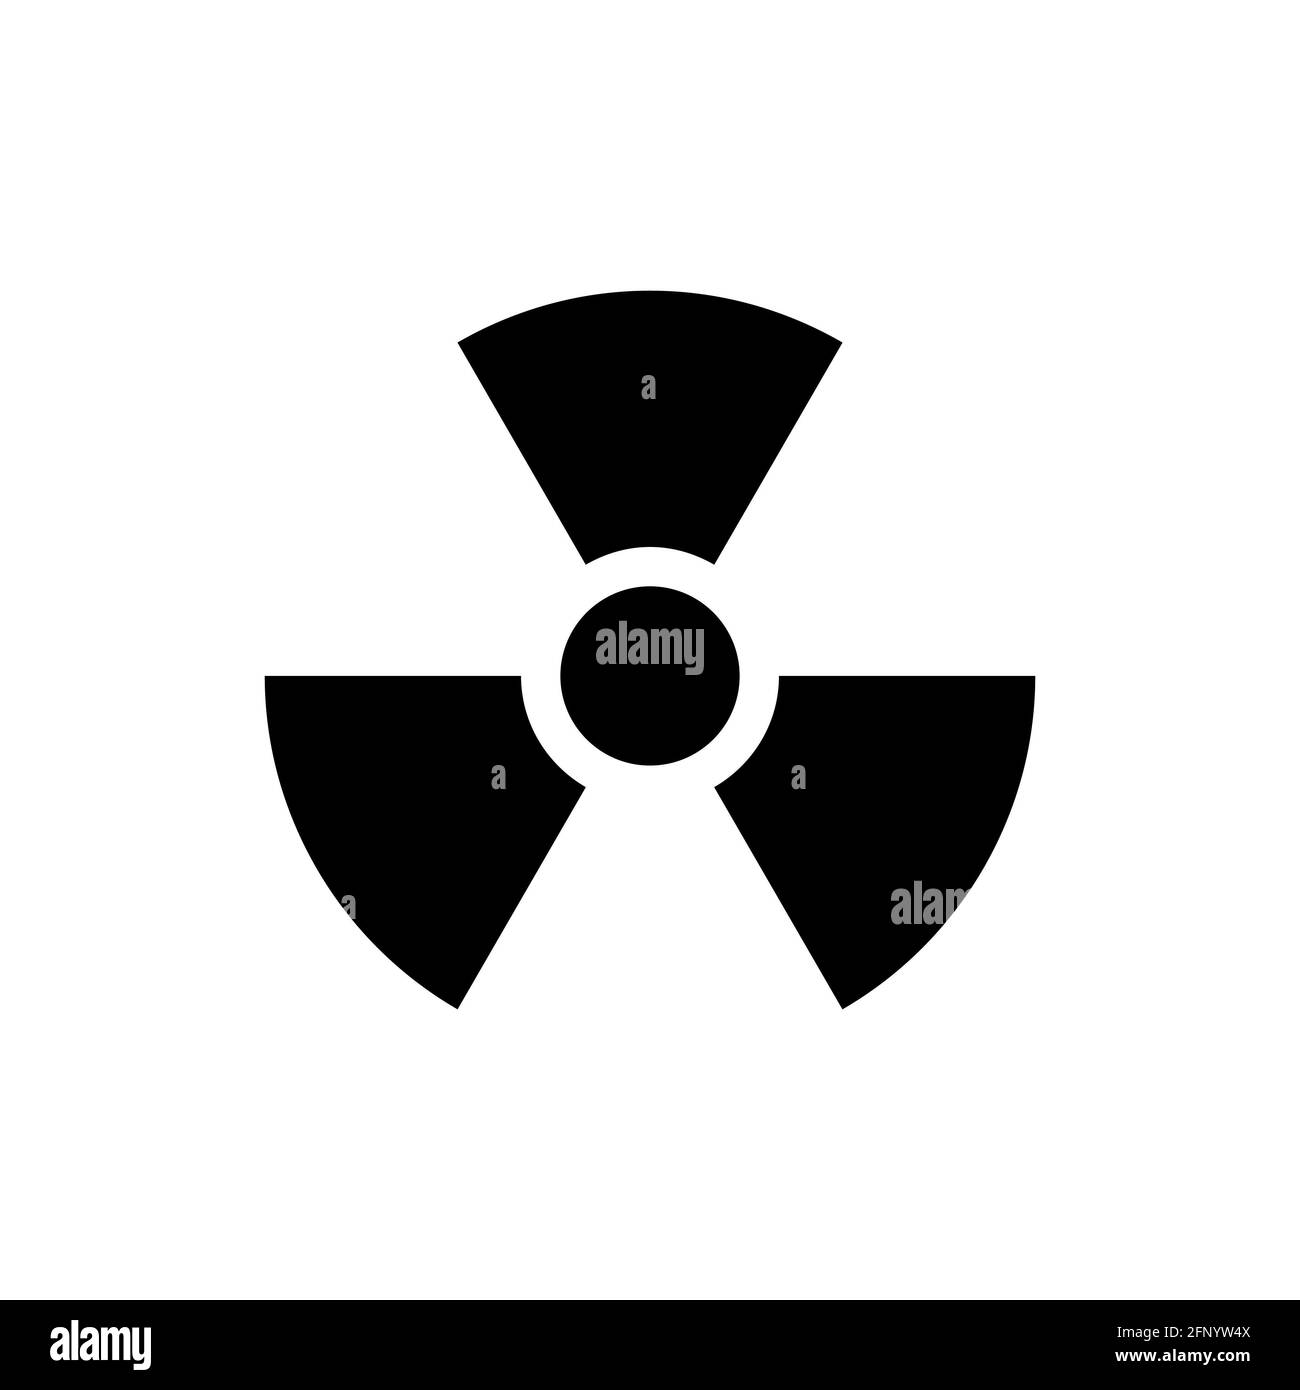 Radiation symbol, radiation icon on white background. illustration. Stock Photo